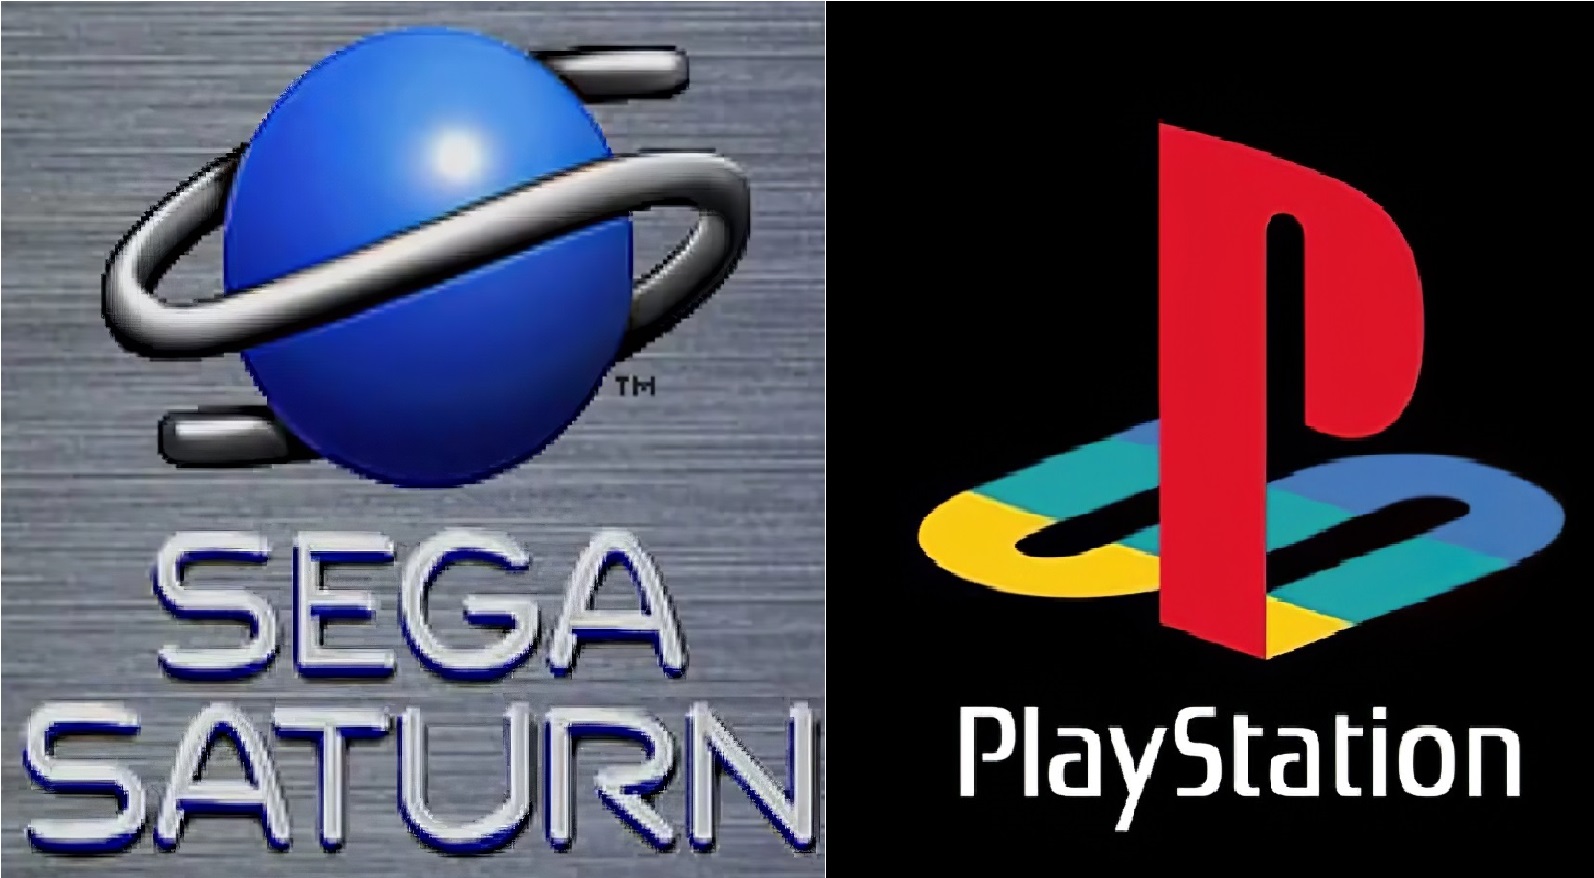 Dlaczego Sega Saturn przegrała z Sony PlayStation?